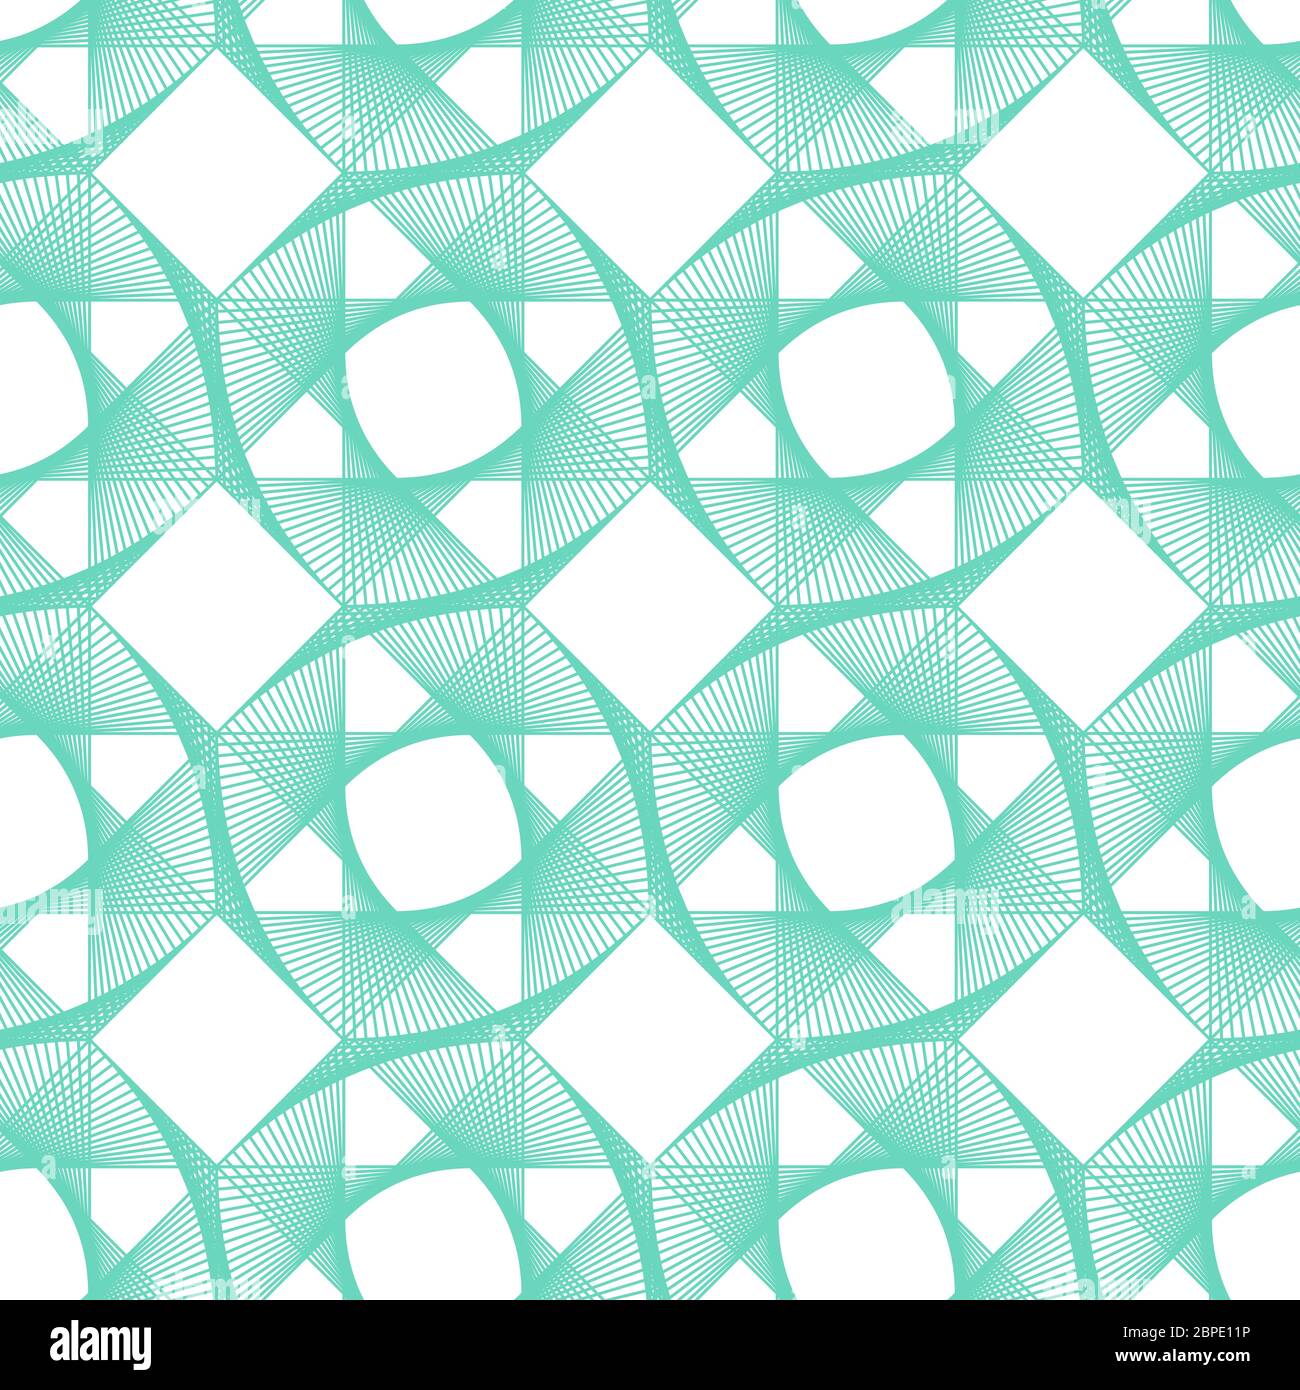 Neo Mint, Aqua Menthe, Smaragd, türkis geometrischen Vektor nahtlose Muster.Farbe 2020. Wiederholende quadratische Textur in neo mint Farben für Hintergrund Stock Vektor